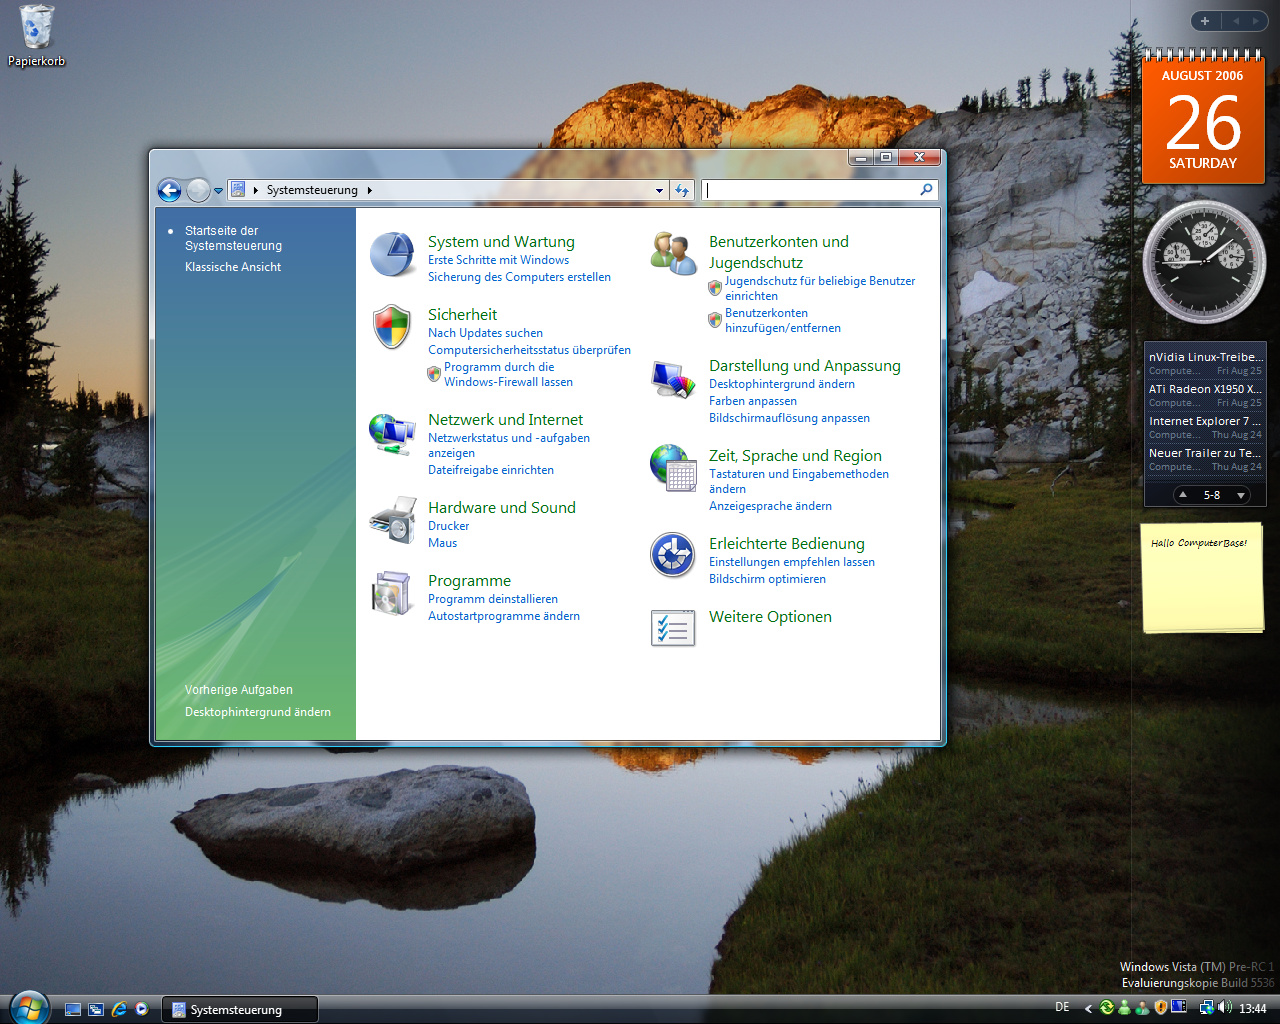 Windows Vista Build 5536 - Systemsteuerung